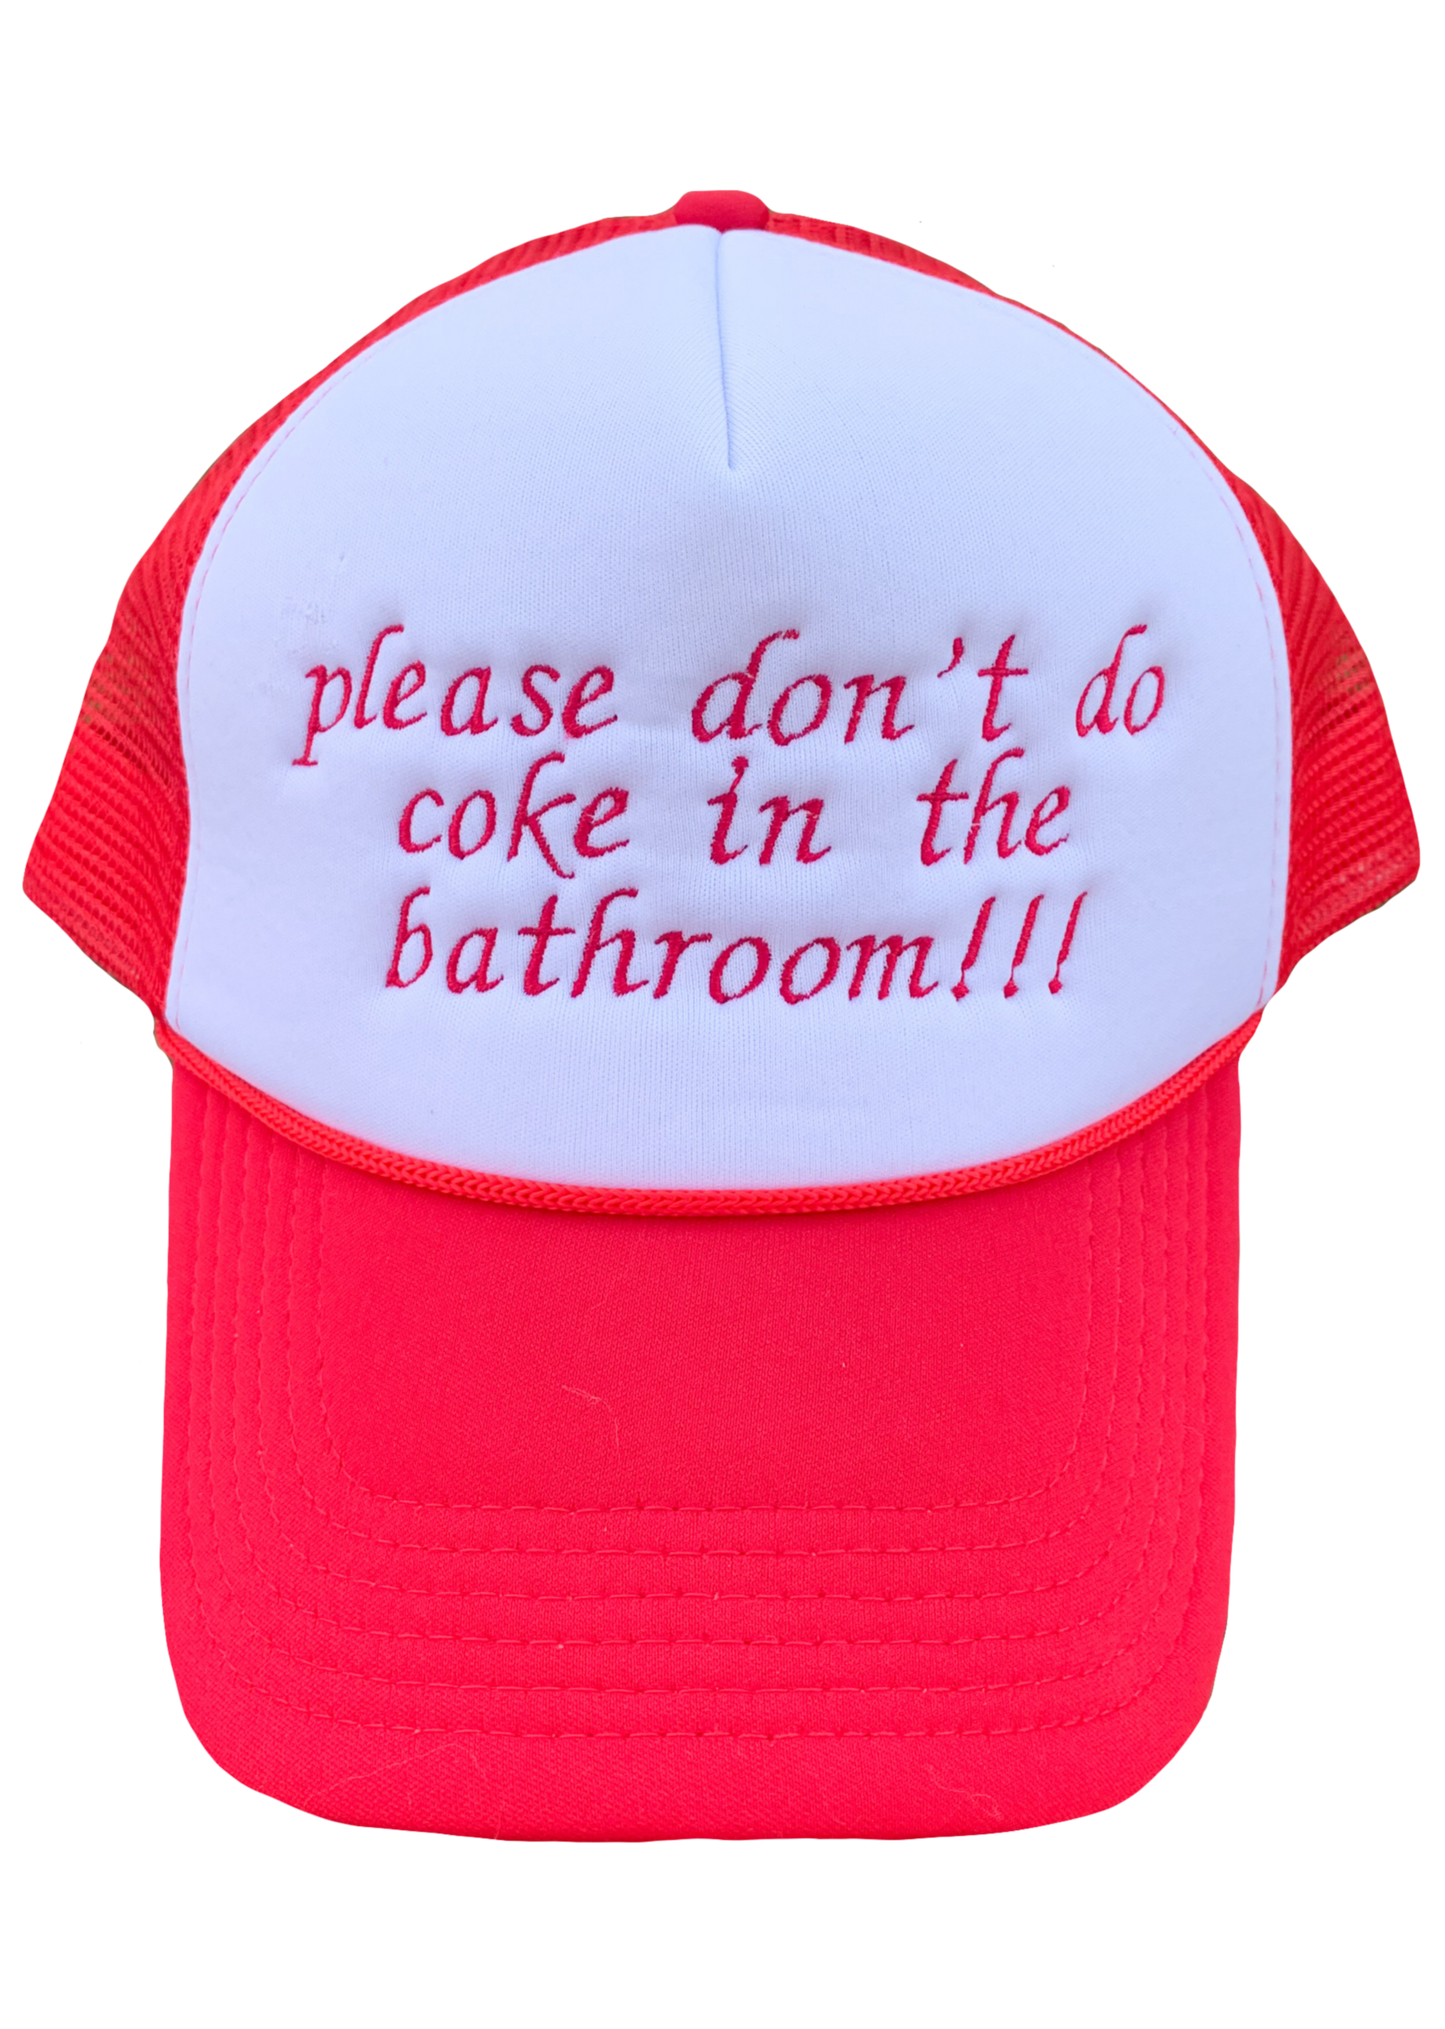 Please Don't Do Coke in the Bathroom Embroidered Foam Trucker Hat